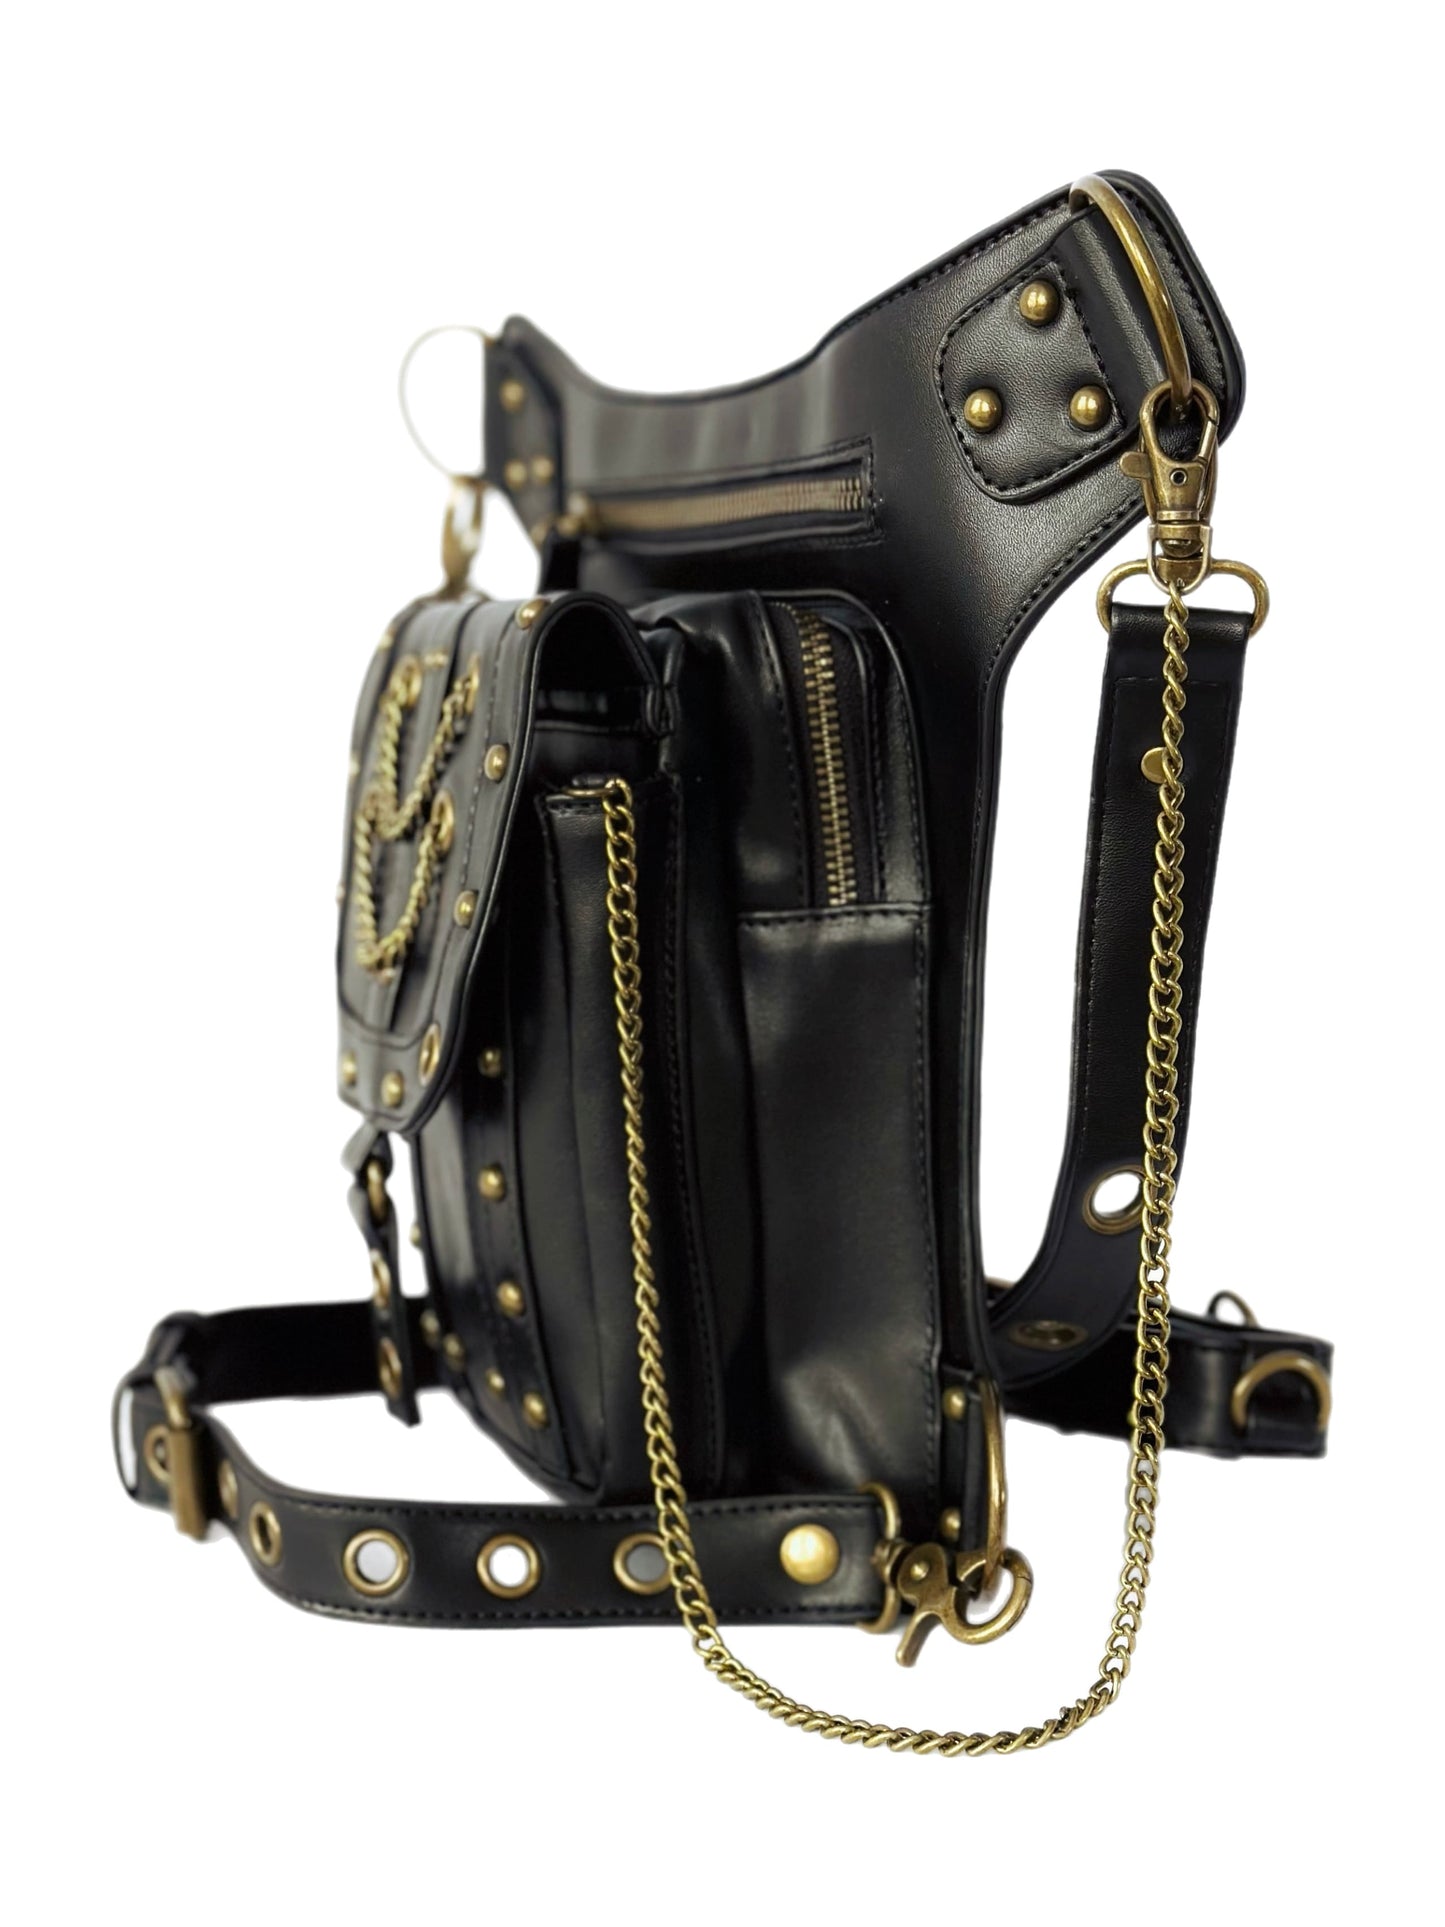 Vielseitige alternative Tasche: Gothic-, Biker & Punk Stil, wandelbar für Hüfte oder Schulter HG 134